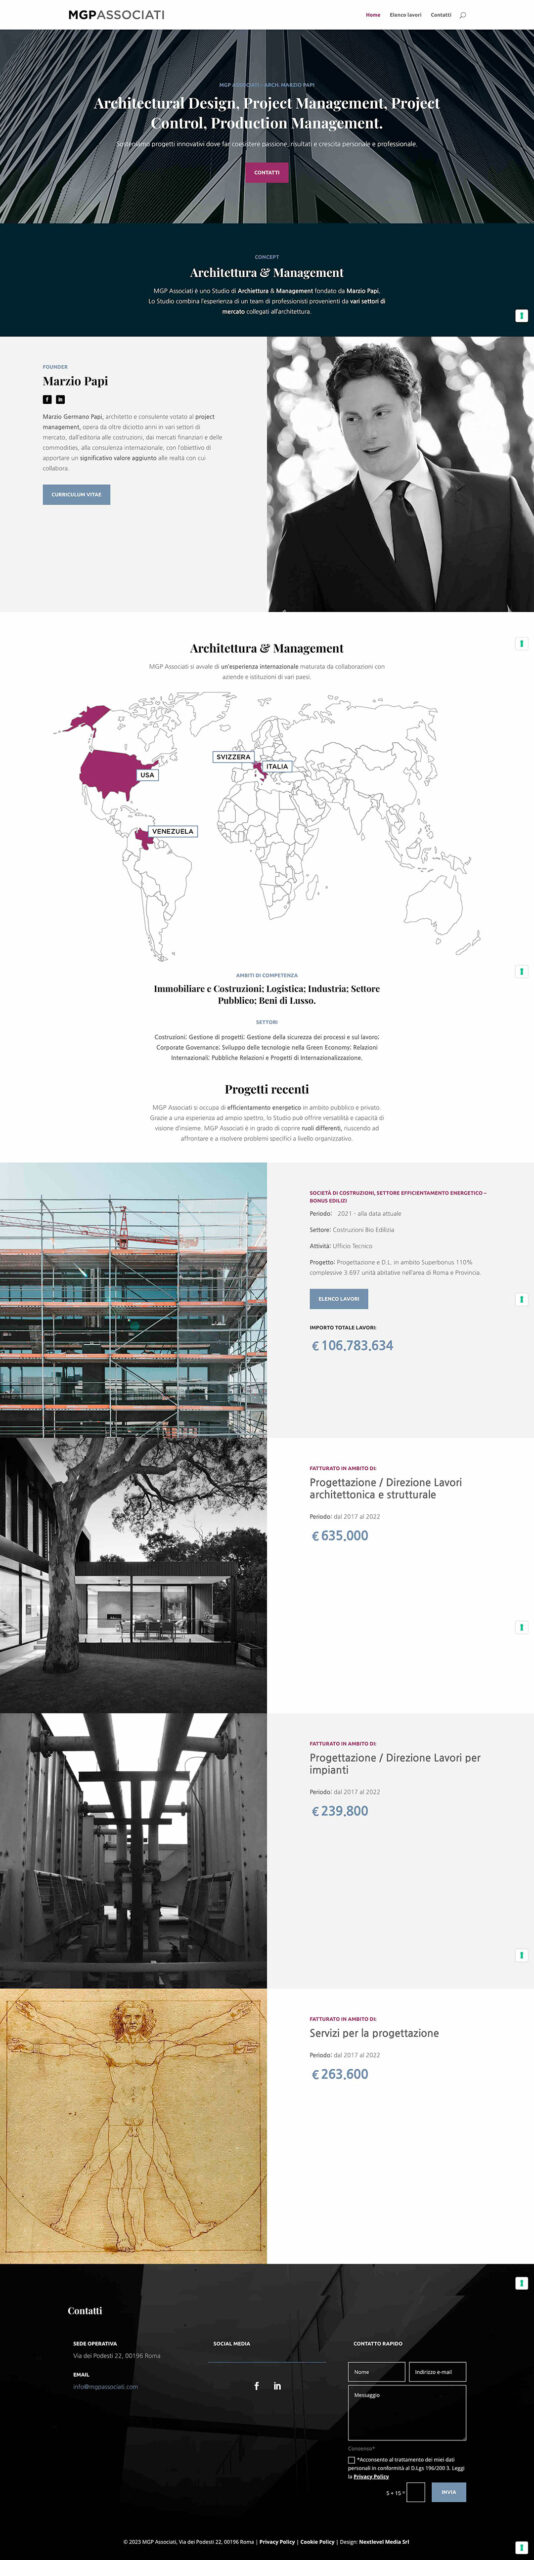 Nextlevel_Roma_Marketing_Costruzioni-Architettura_MGP_Sito_Web_1080px_2